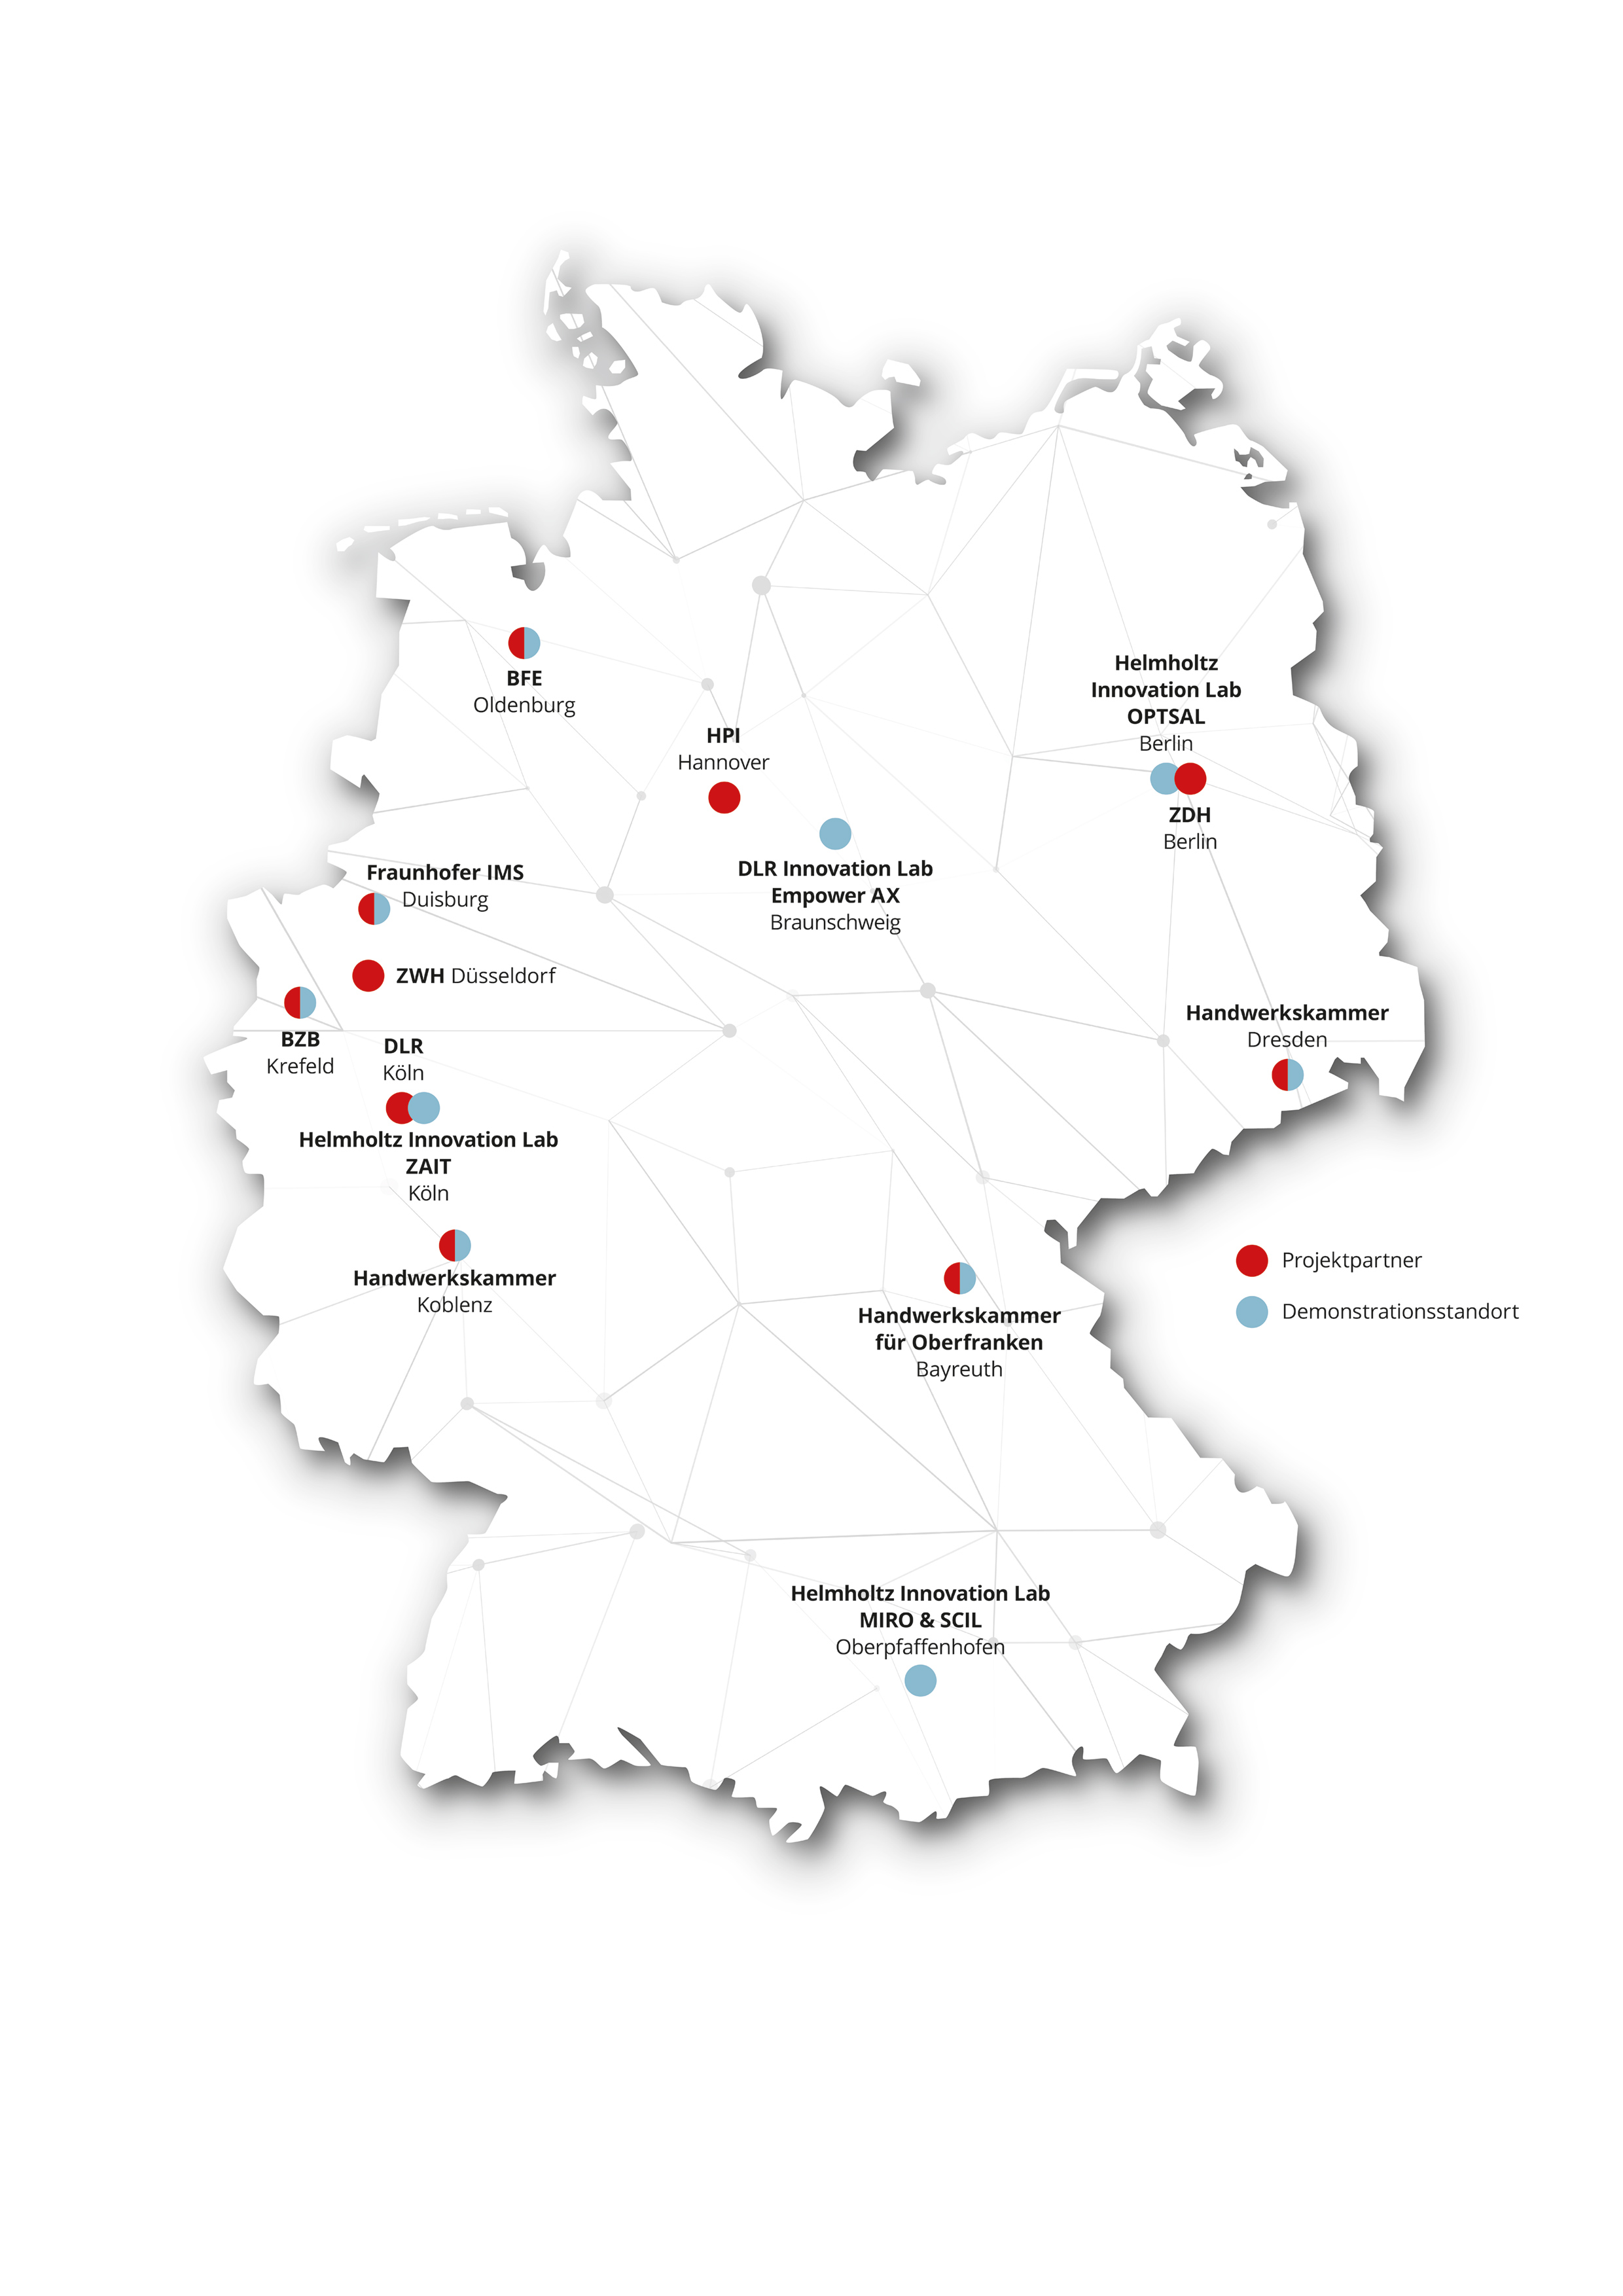 Deutschlandkarte der Partner des Mittelstand-Digital Zentrums Handwerk